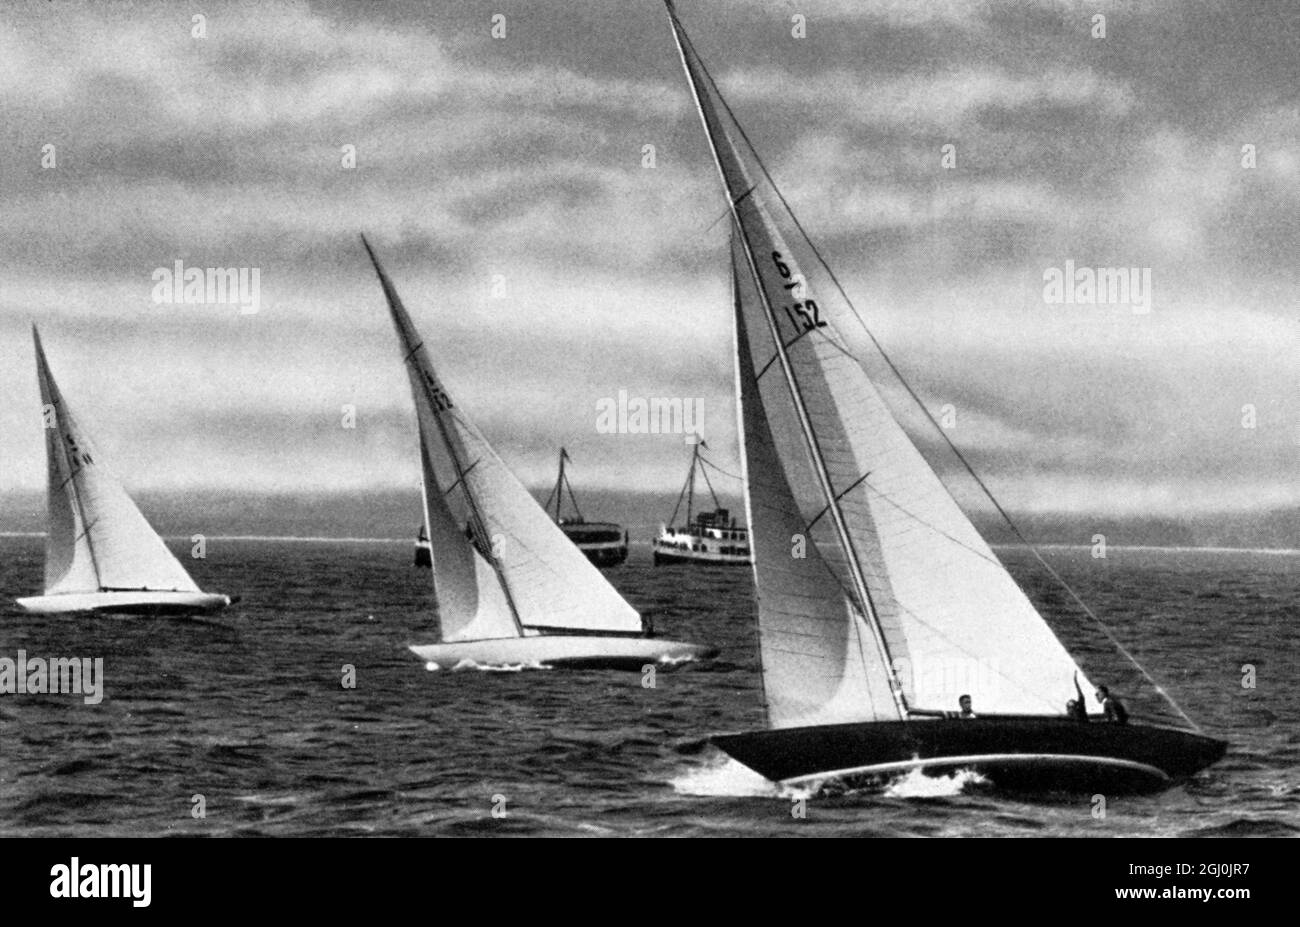 1936 Olimpiadas, Berlín - Barcos de la clase de 6 metros recortando las olas en el lago en un viento fuerte. (Boote der 6-m-R-Klasse bei kraftiger Brise und bewegter See im schneidigen Rennen.) ©Topfoto Foto de stock